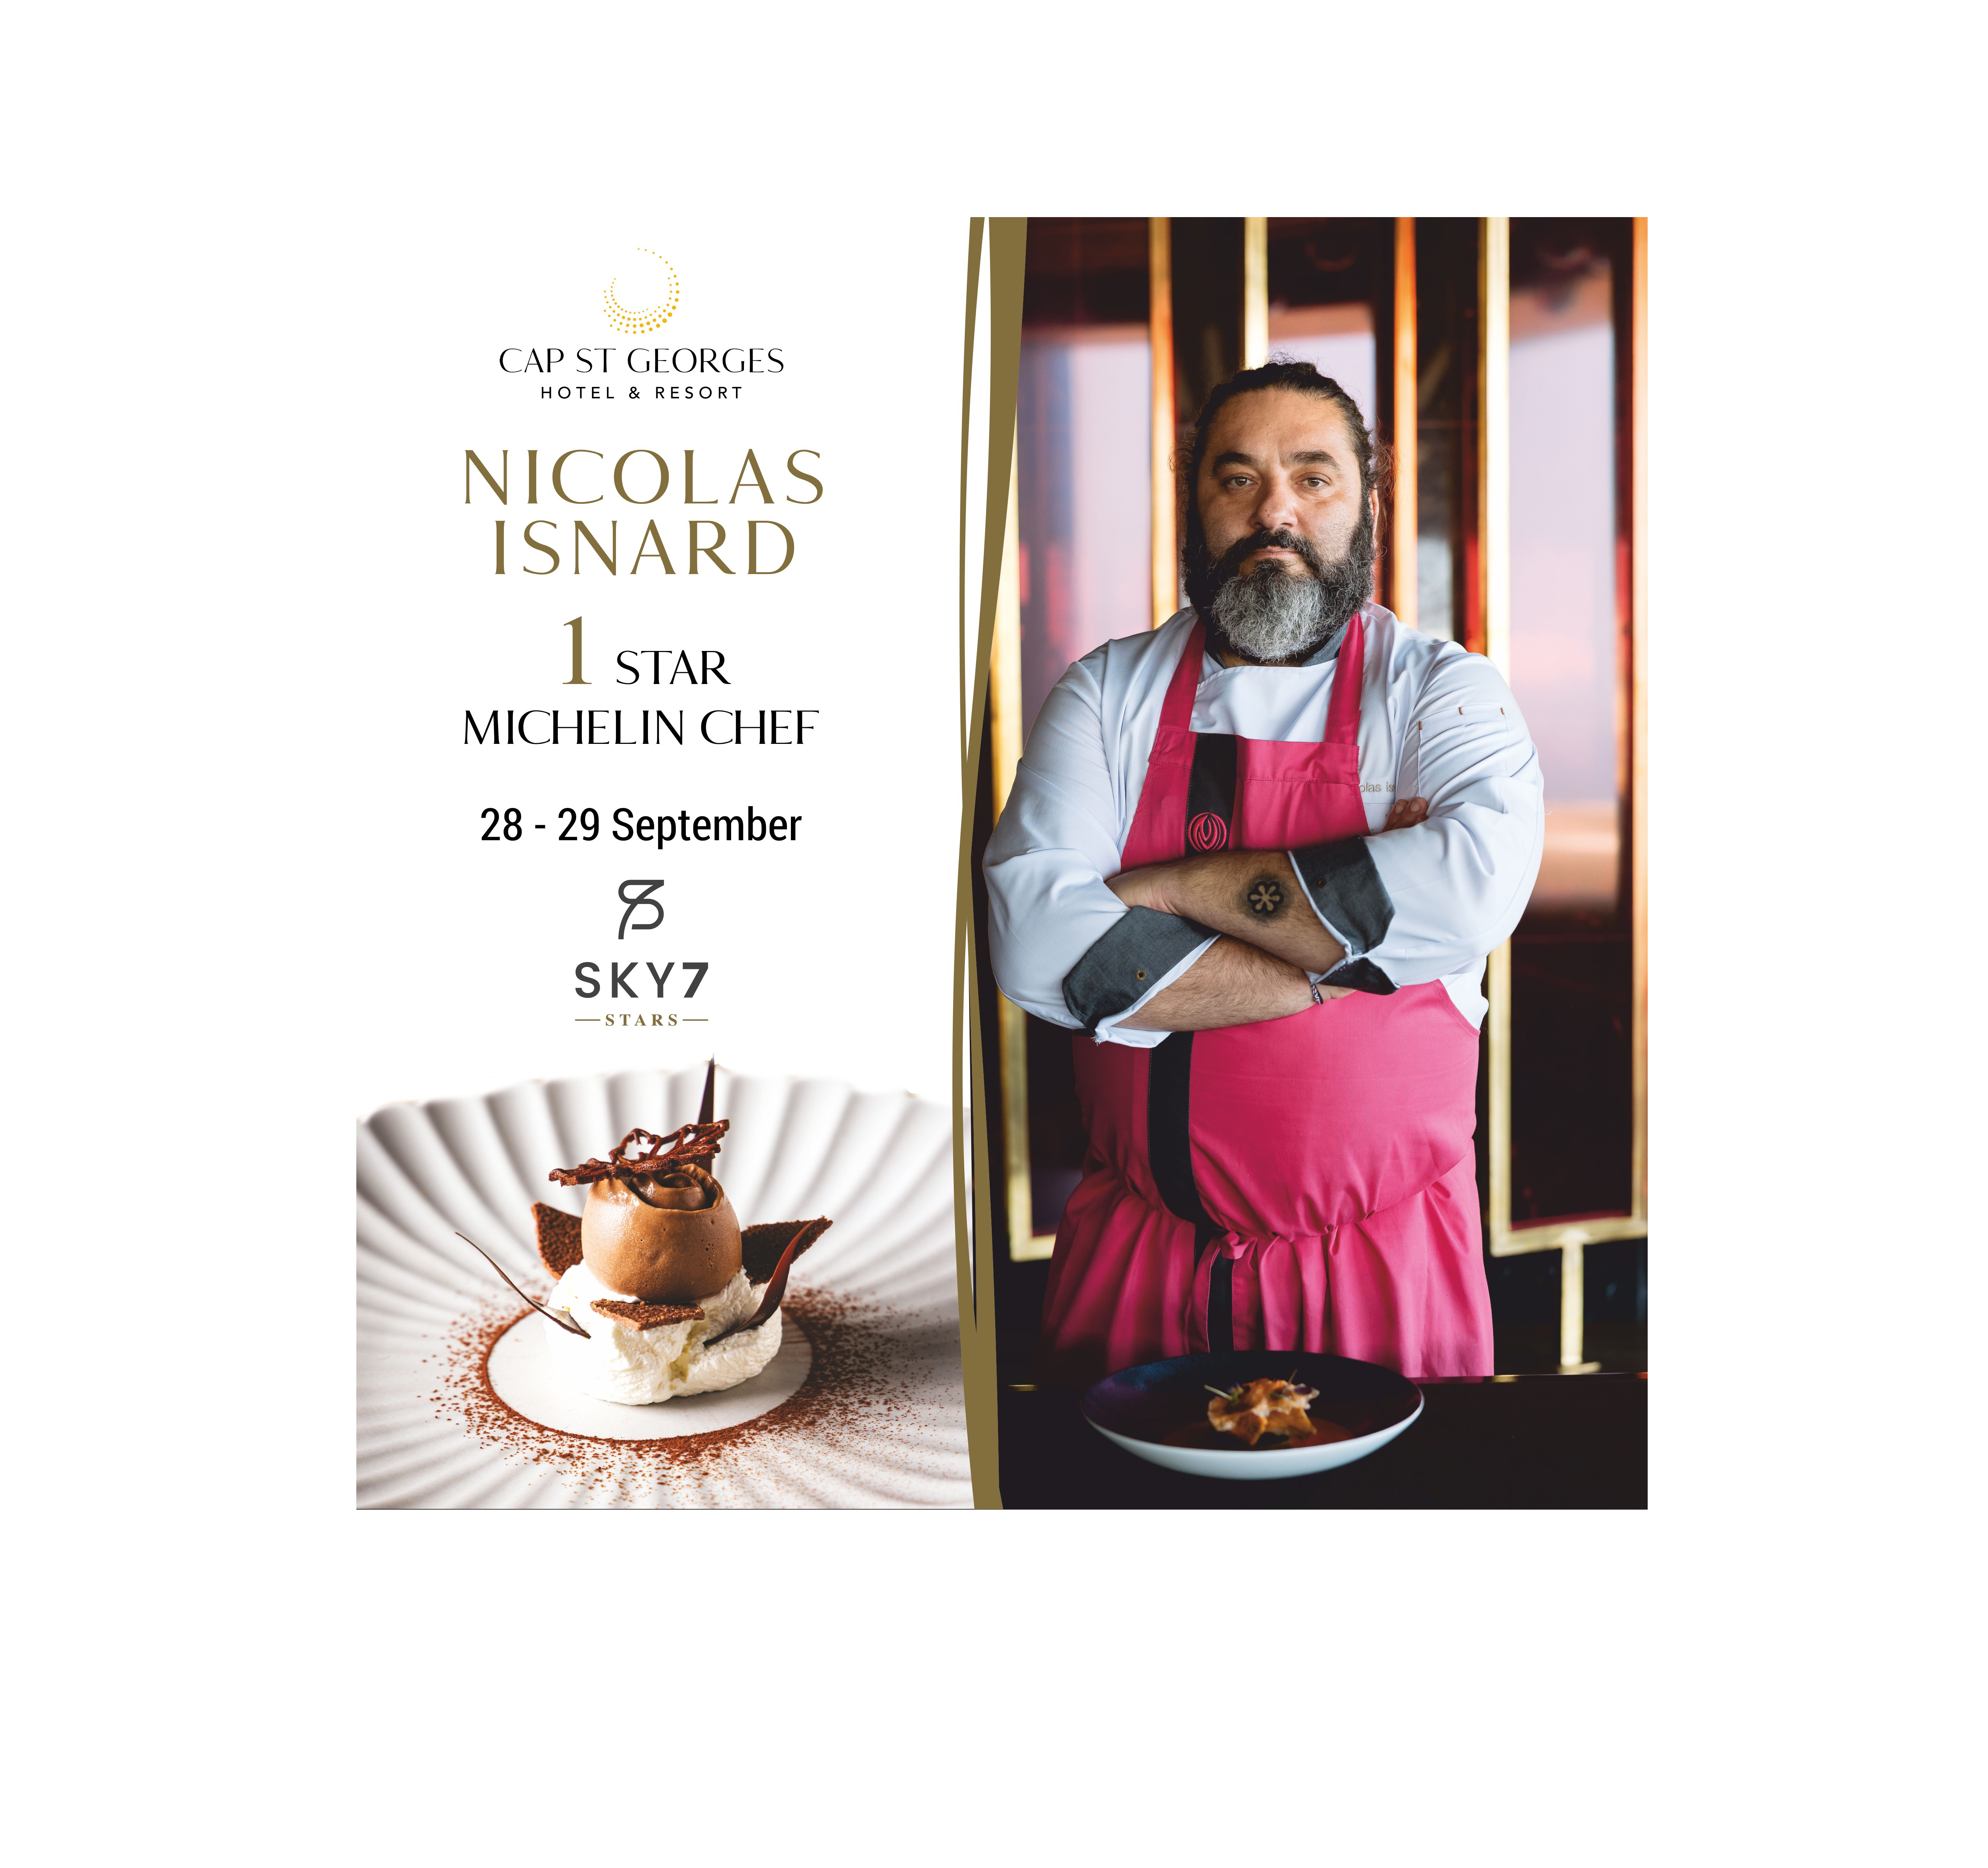 Ο Γάλλος σεφ Nicolas Isnard με ένα αστέρι Michelin στο Cap St Georges Hotel & Resort